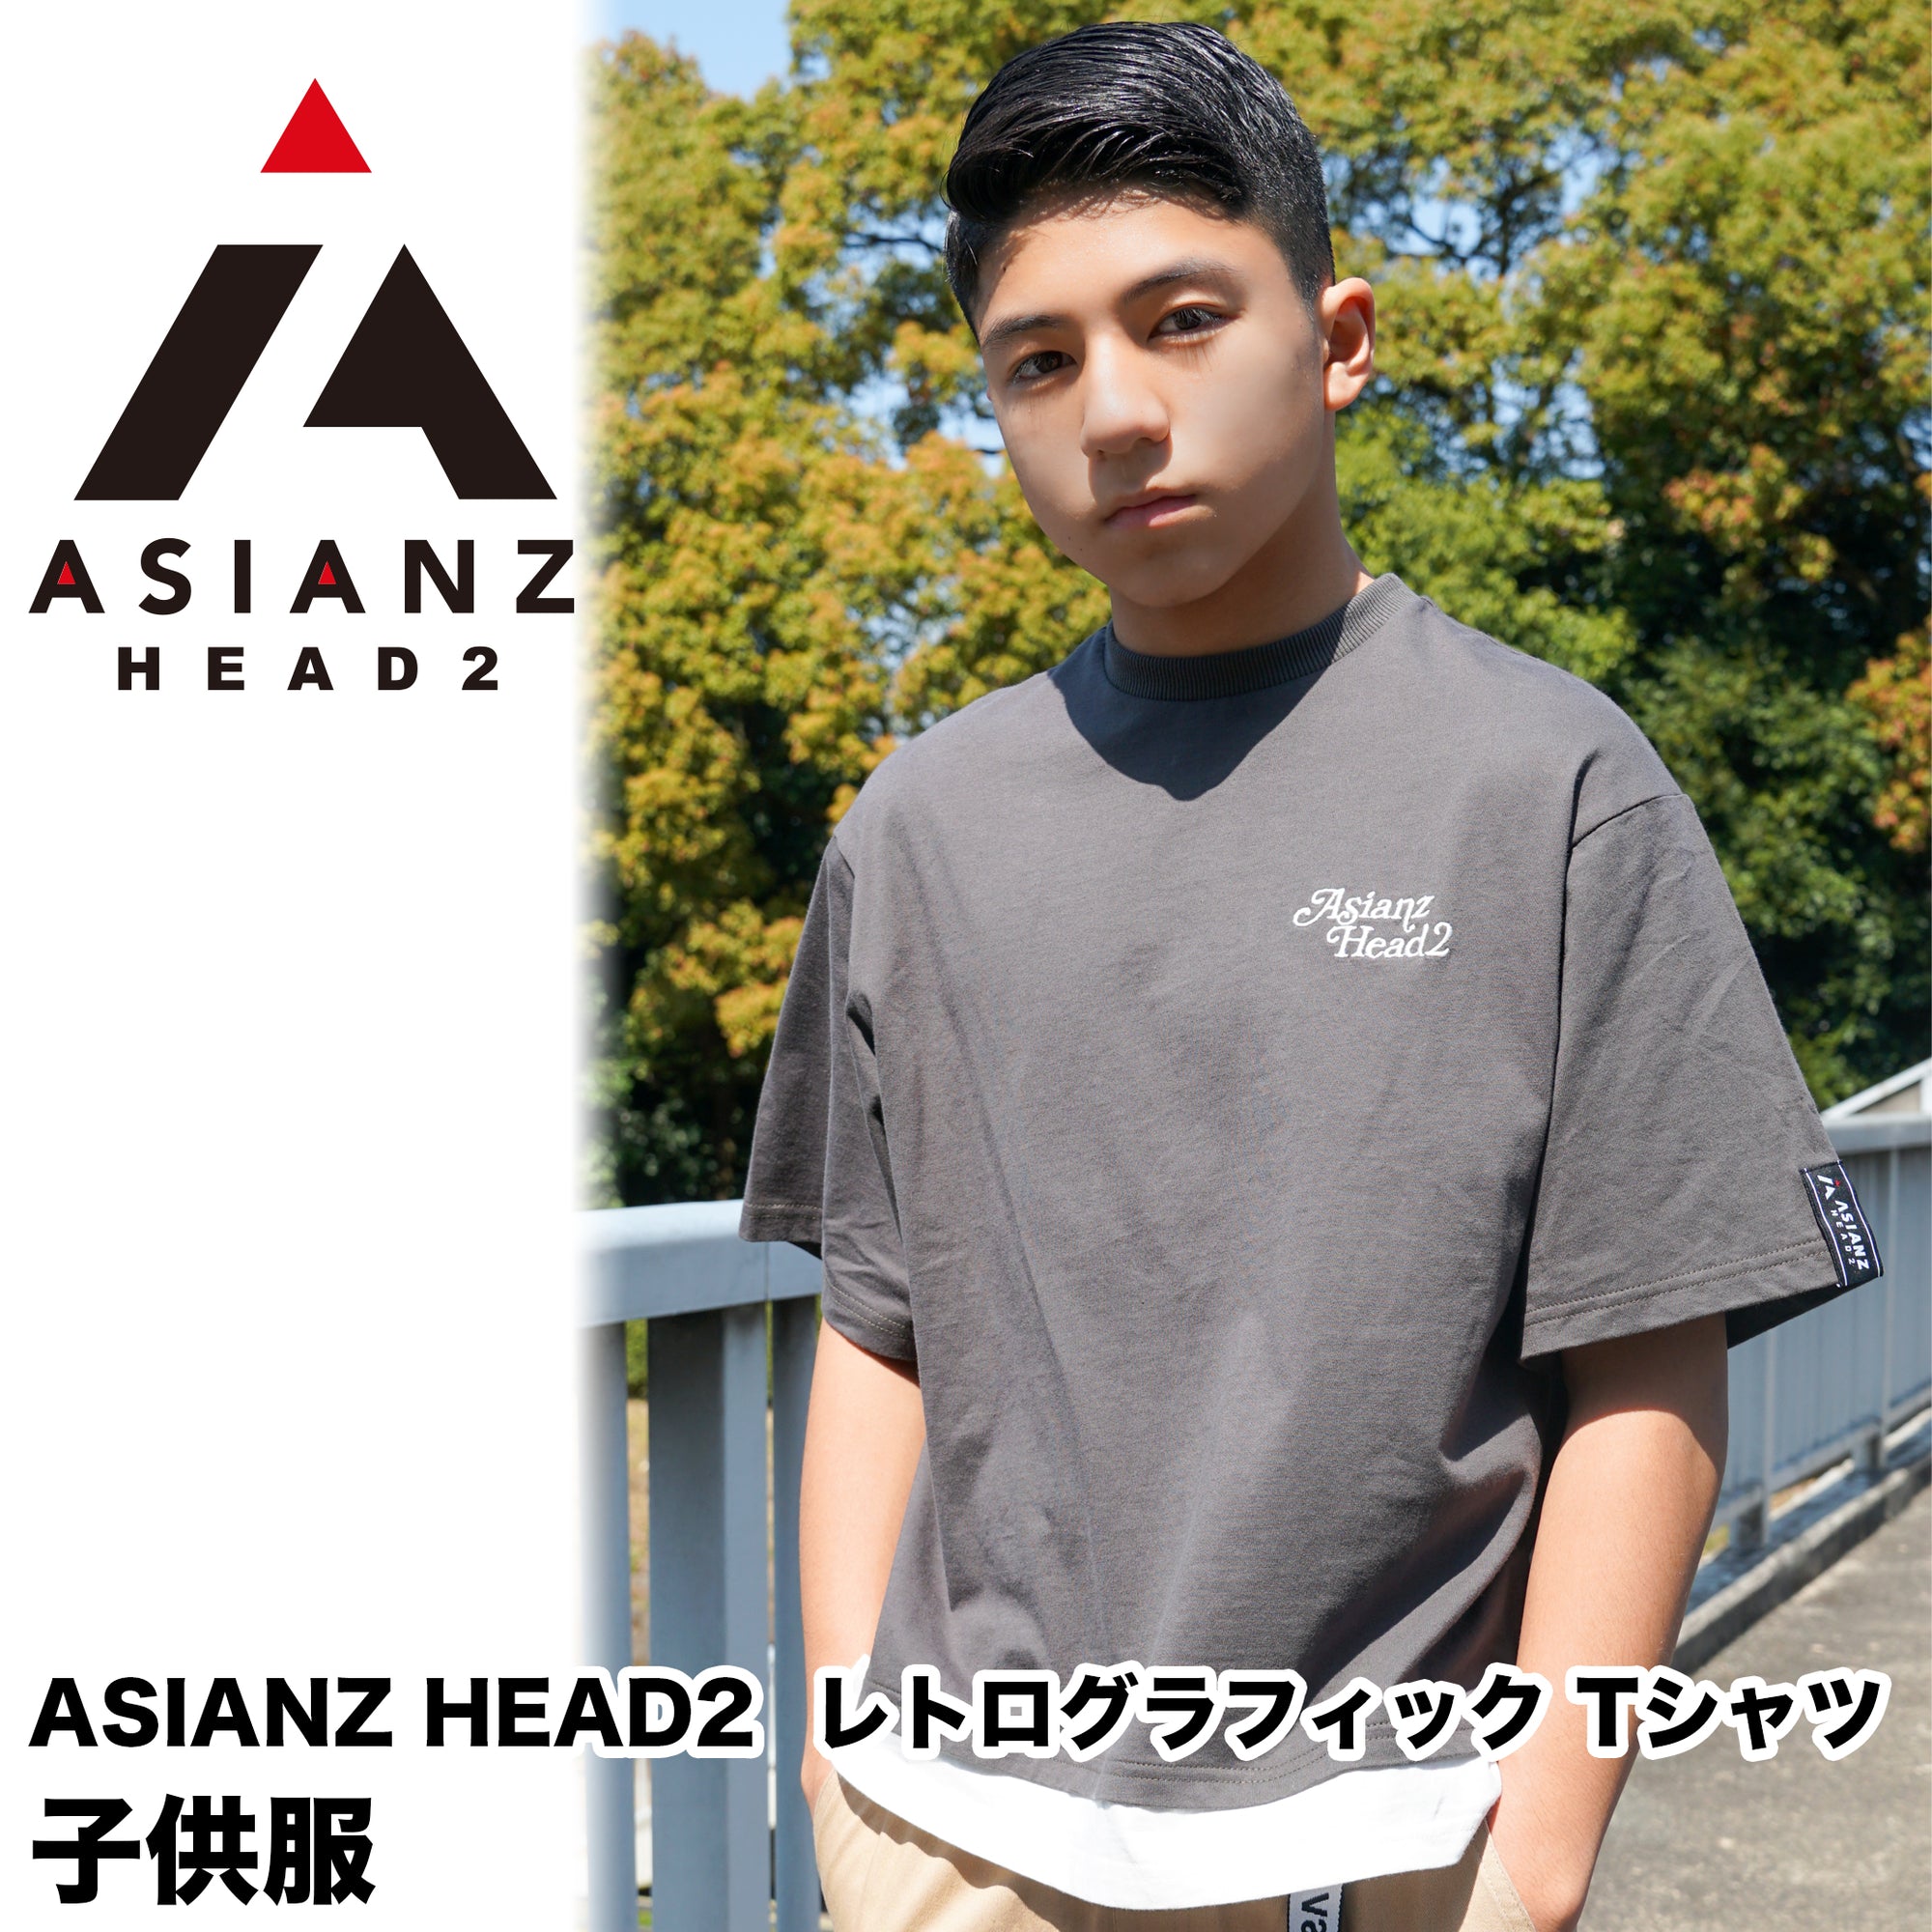 (40%オフ! セール商品)ASIANZ HEAD2 レトログラフィック Tシャツ キッズウェアー